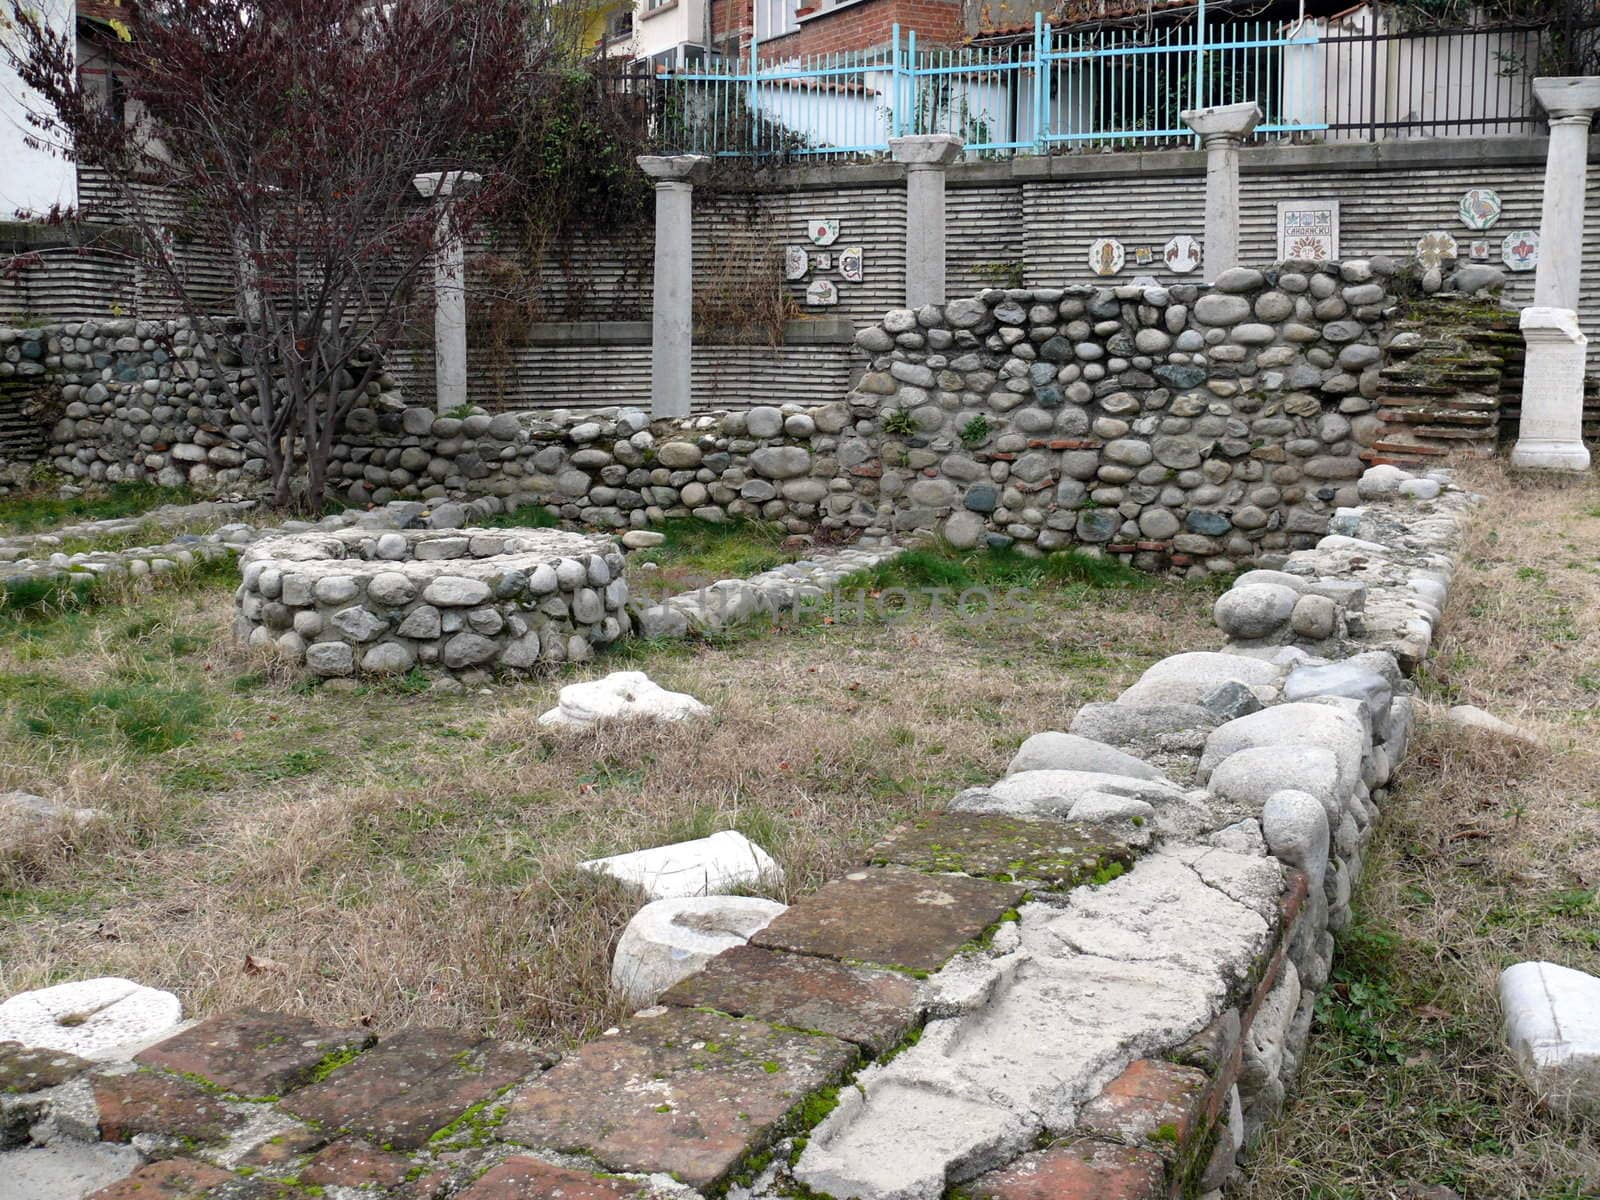 Old Christian ruins in Sandanski, Bulgaria by Stoyanov